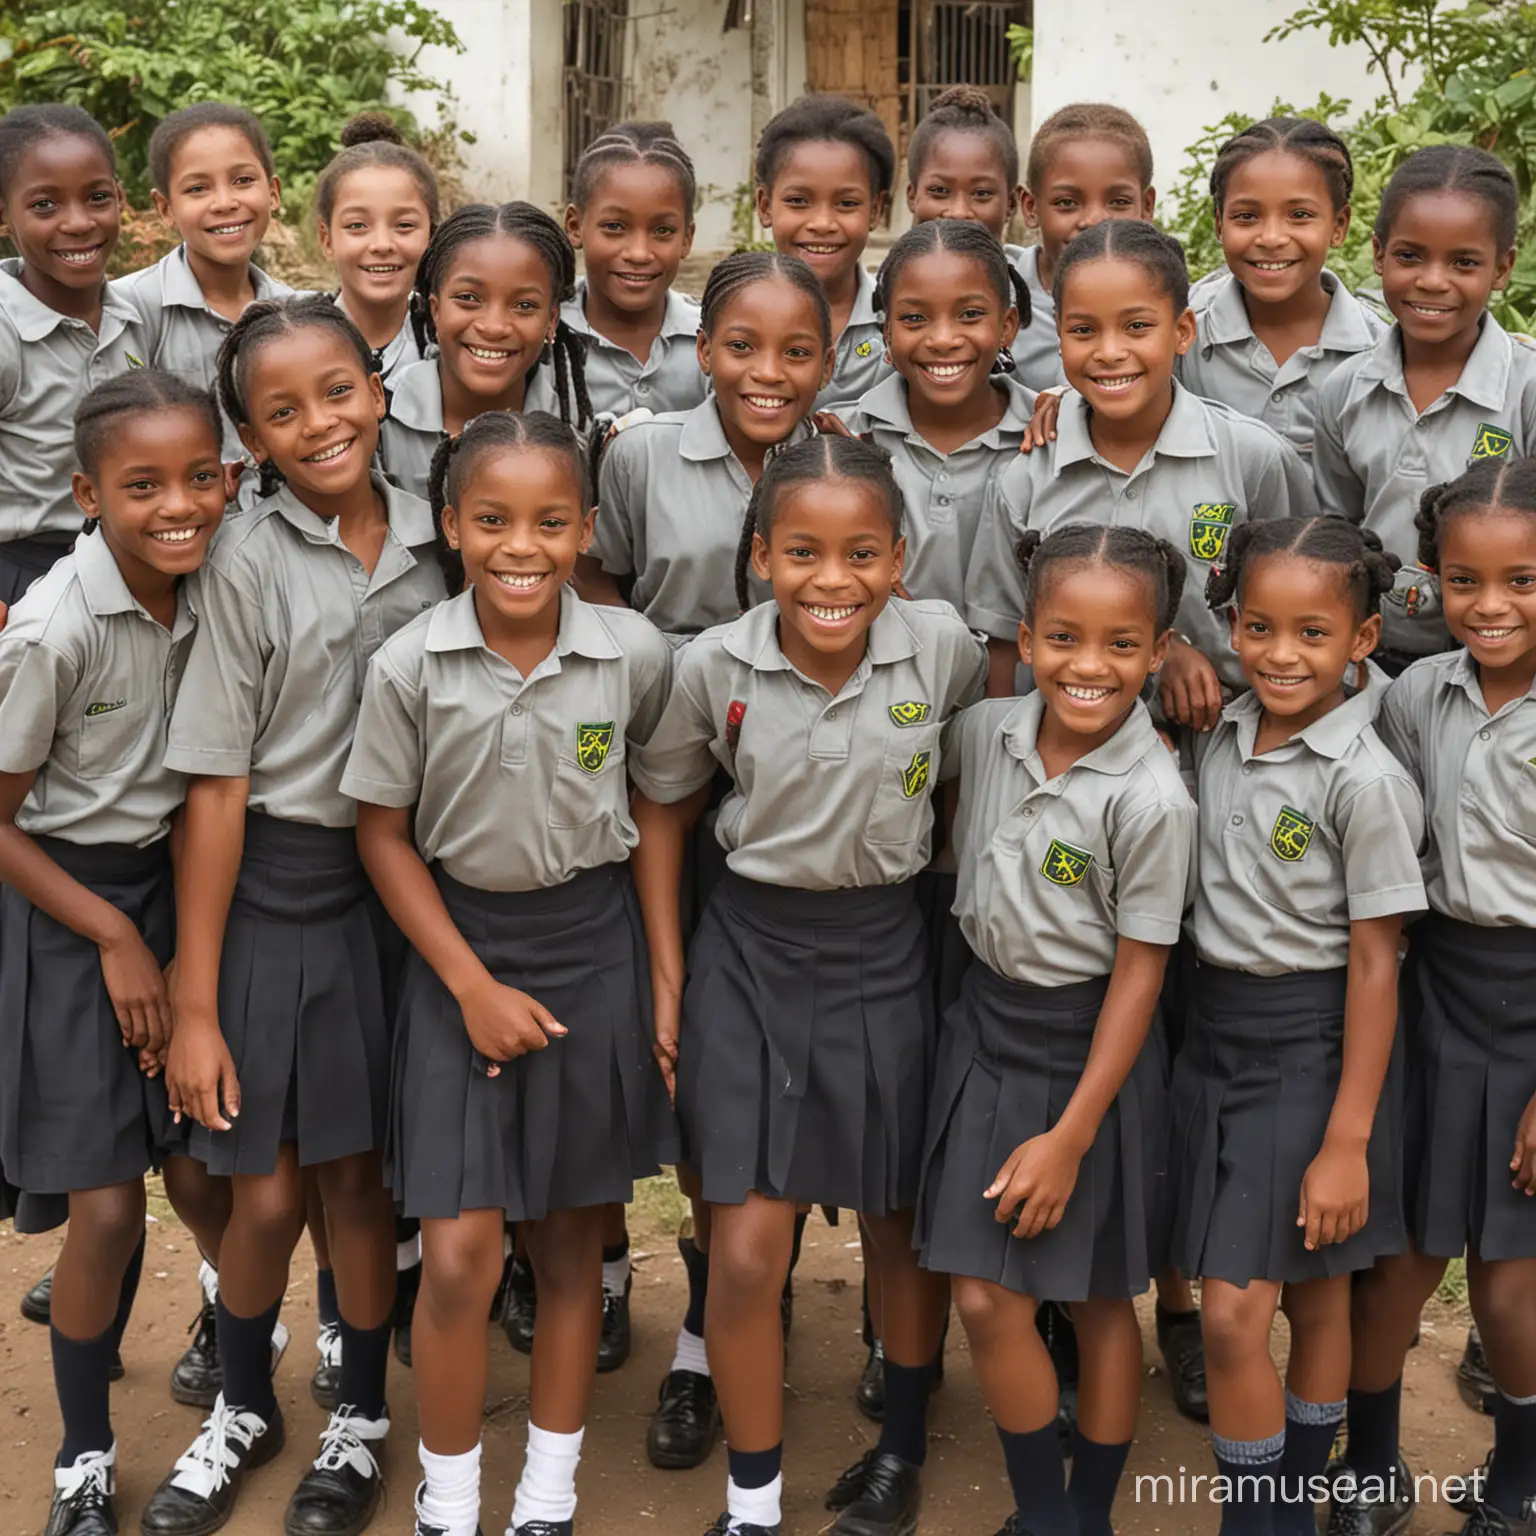 jAMAICAN SCHOOL CHILDREN IN UNIFORM SMILING